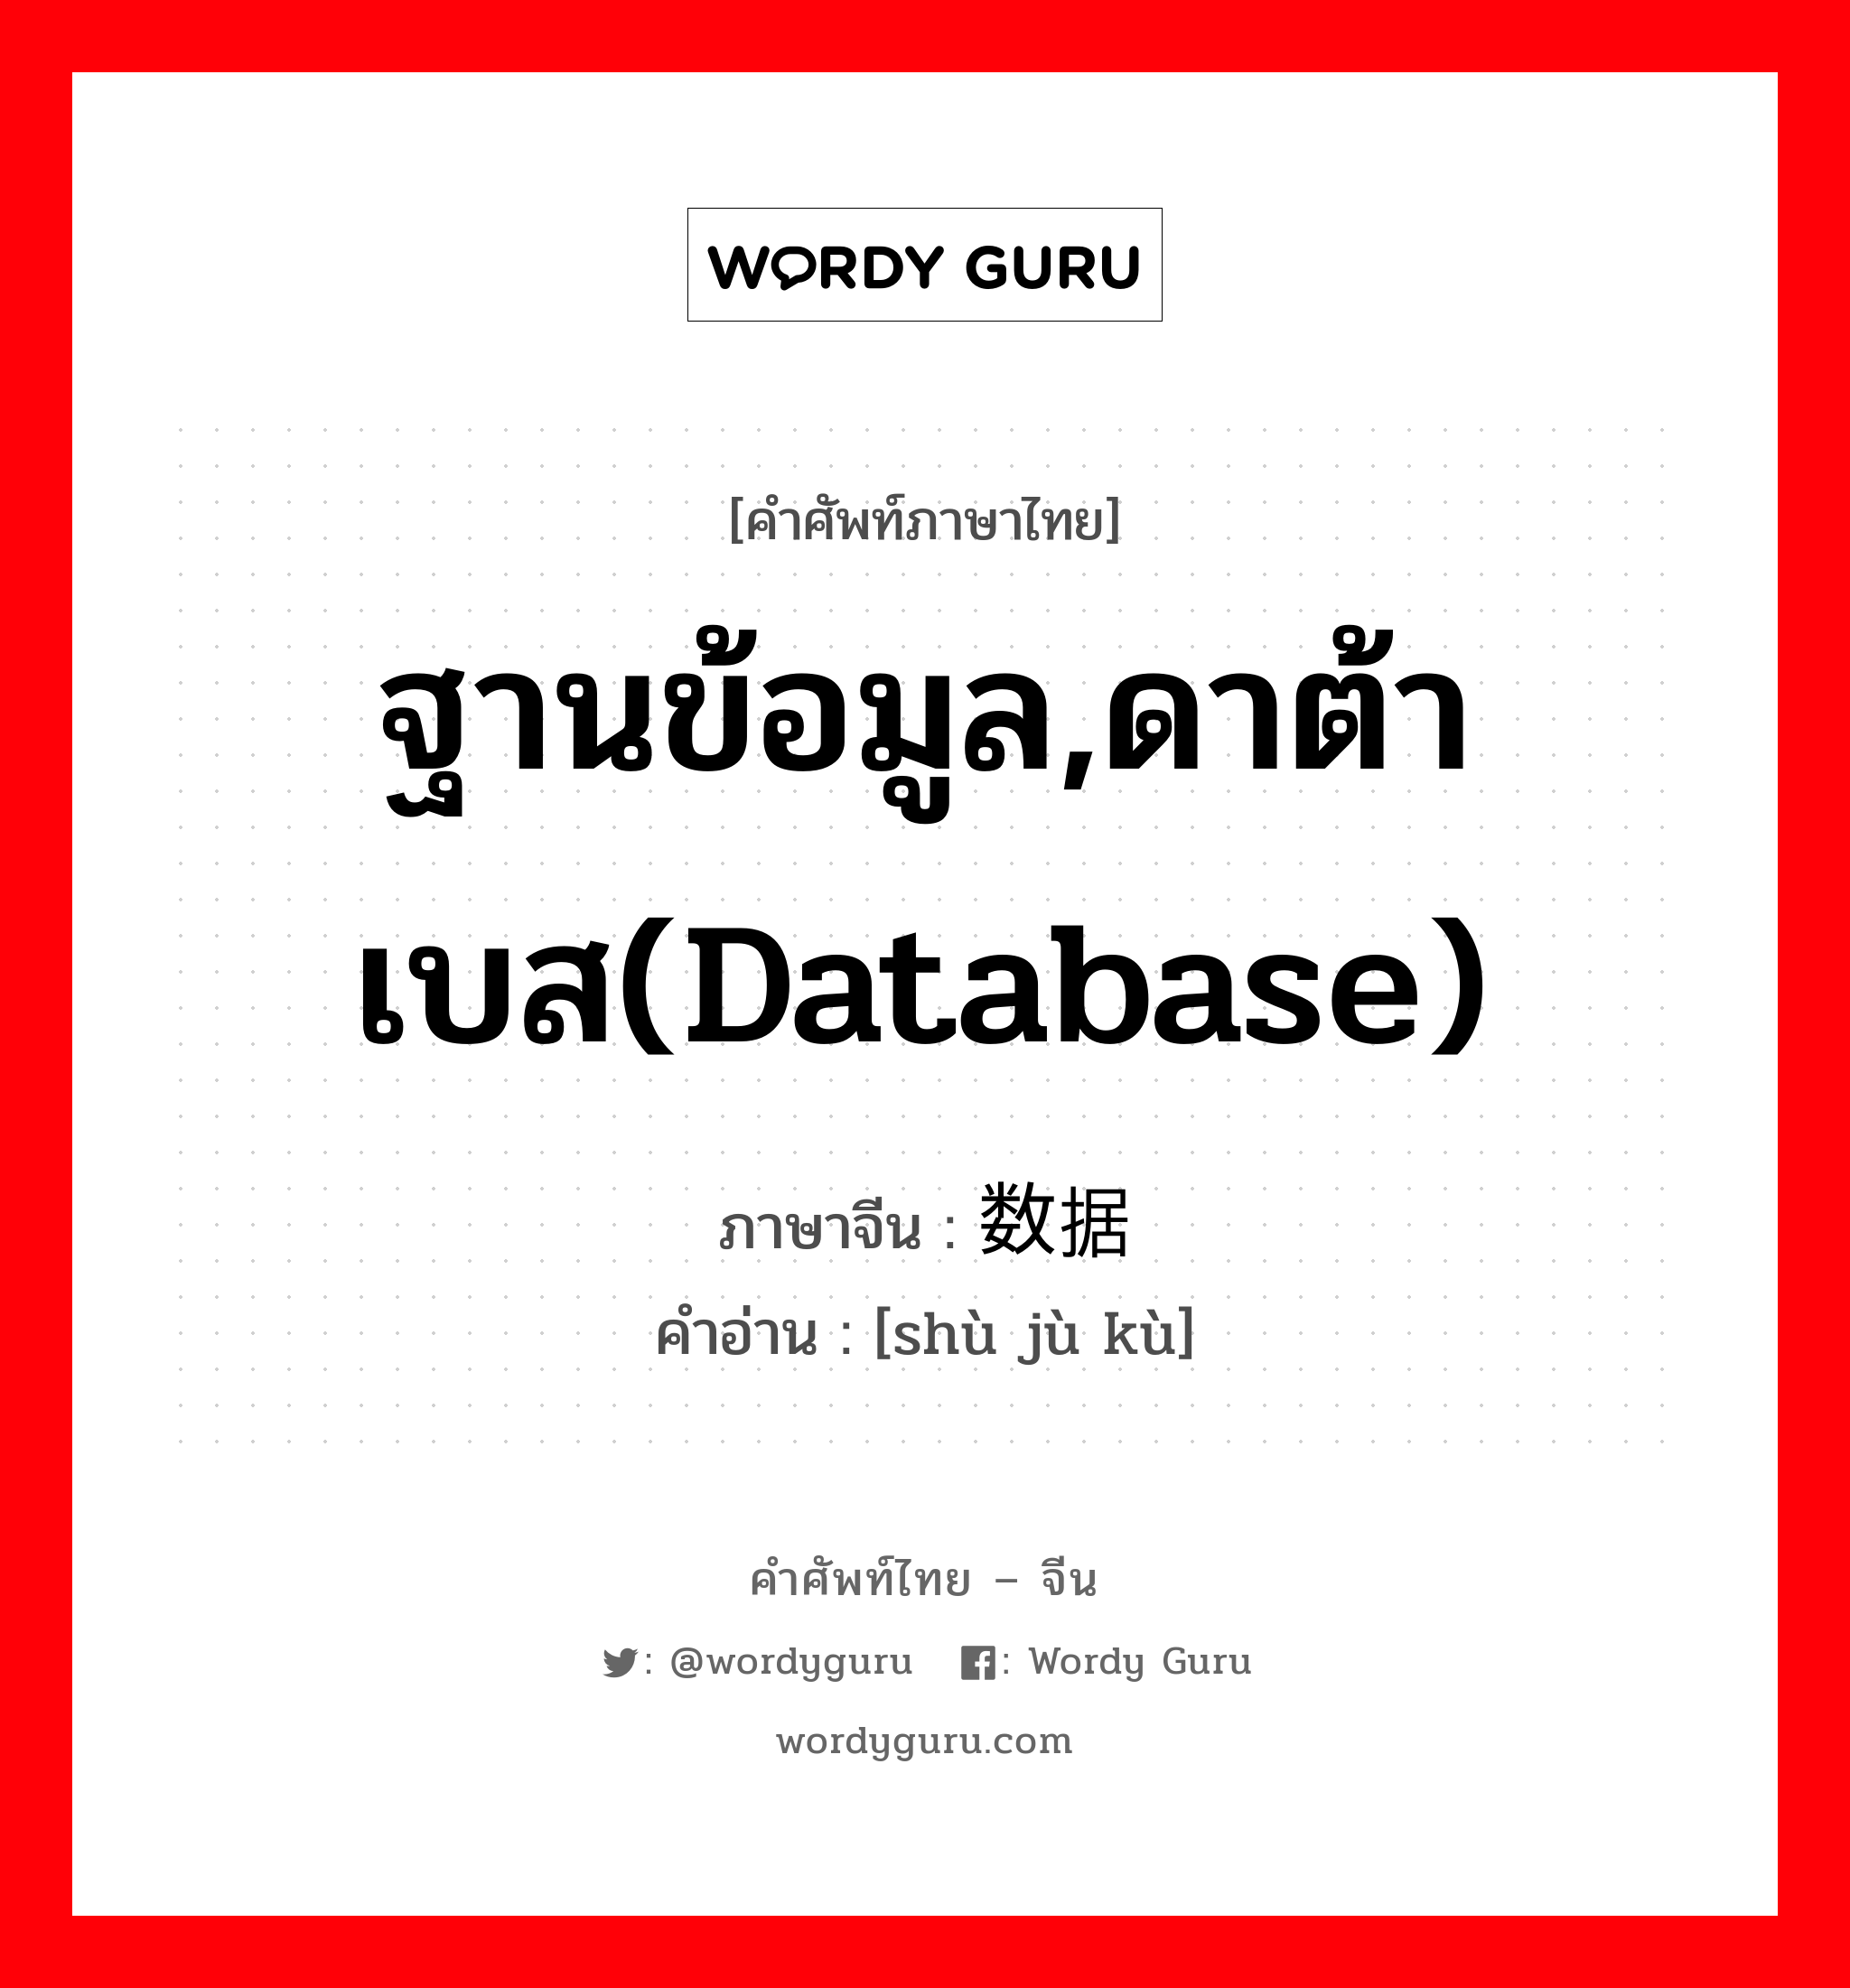 ฐานข้อมูล,ดาต้าเบส(database) ภาษาจีนคืออะไร, คำศัพท์ภาษาไทย - จีน ฐานข้อมูล,ดาต้าเบส(database) ภาษาจีน 数据库 คำอ่าน [shù jù kù]